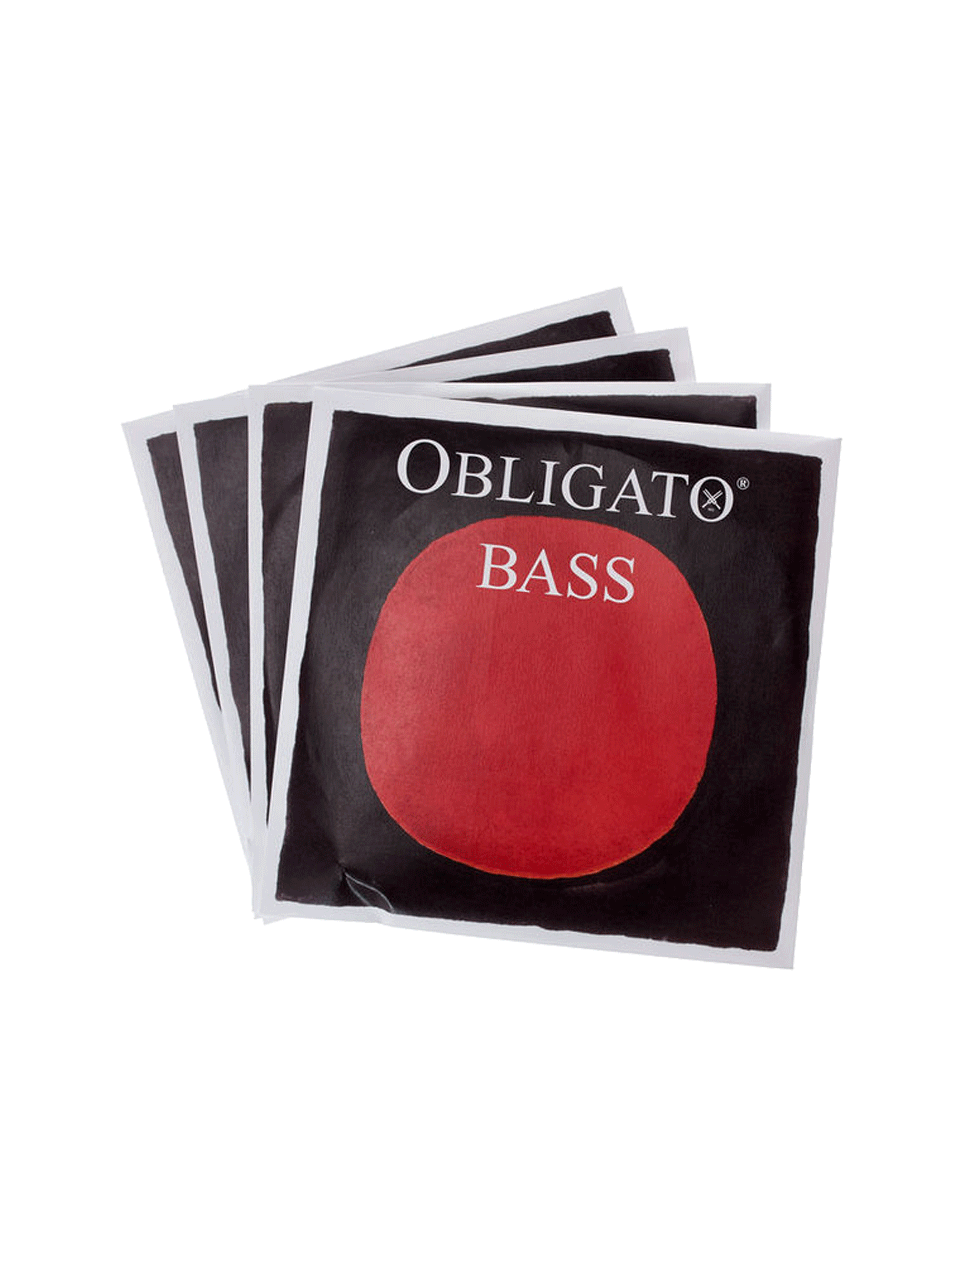 Pirastro-Obligato-Double-Bass-11133220_800.png